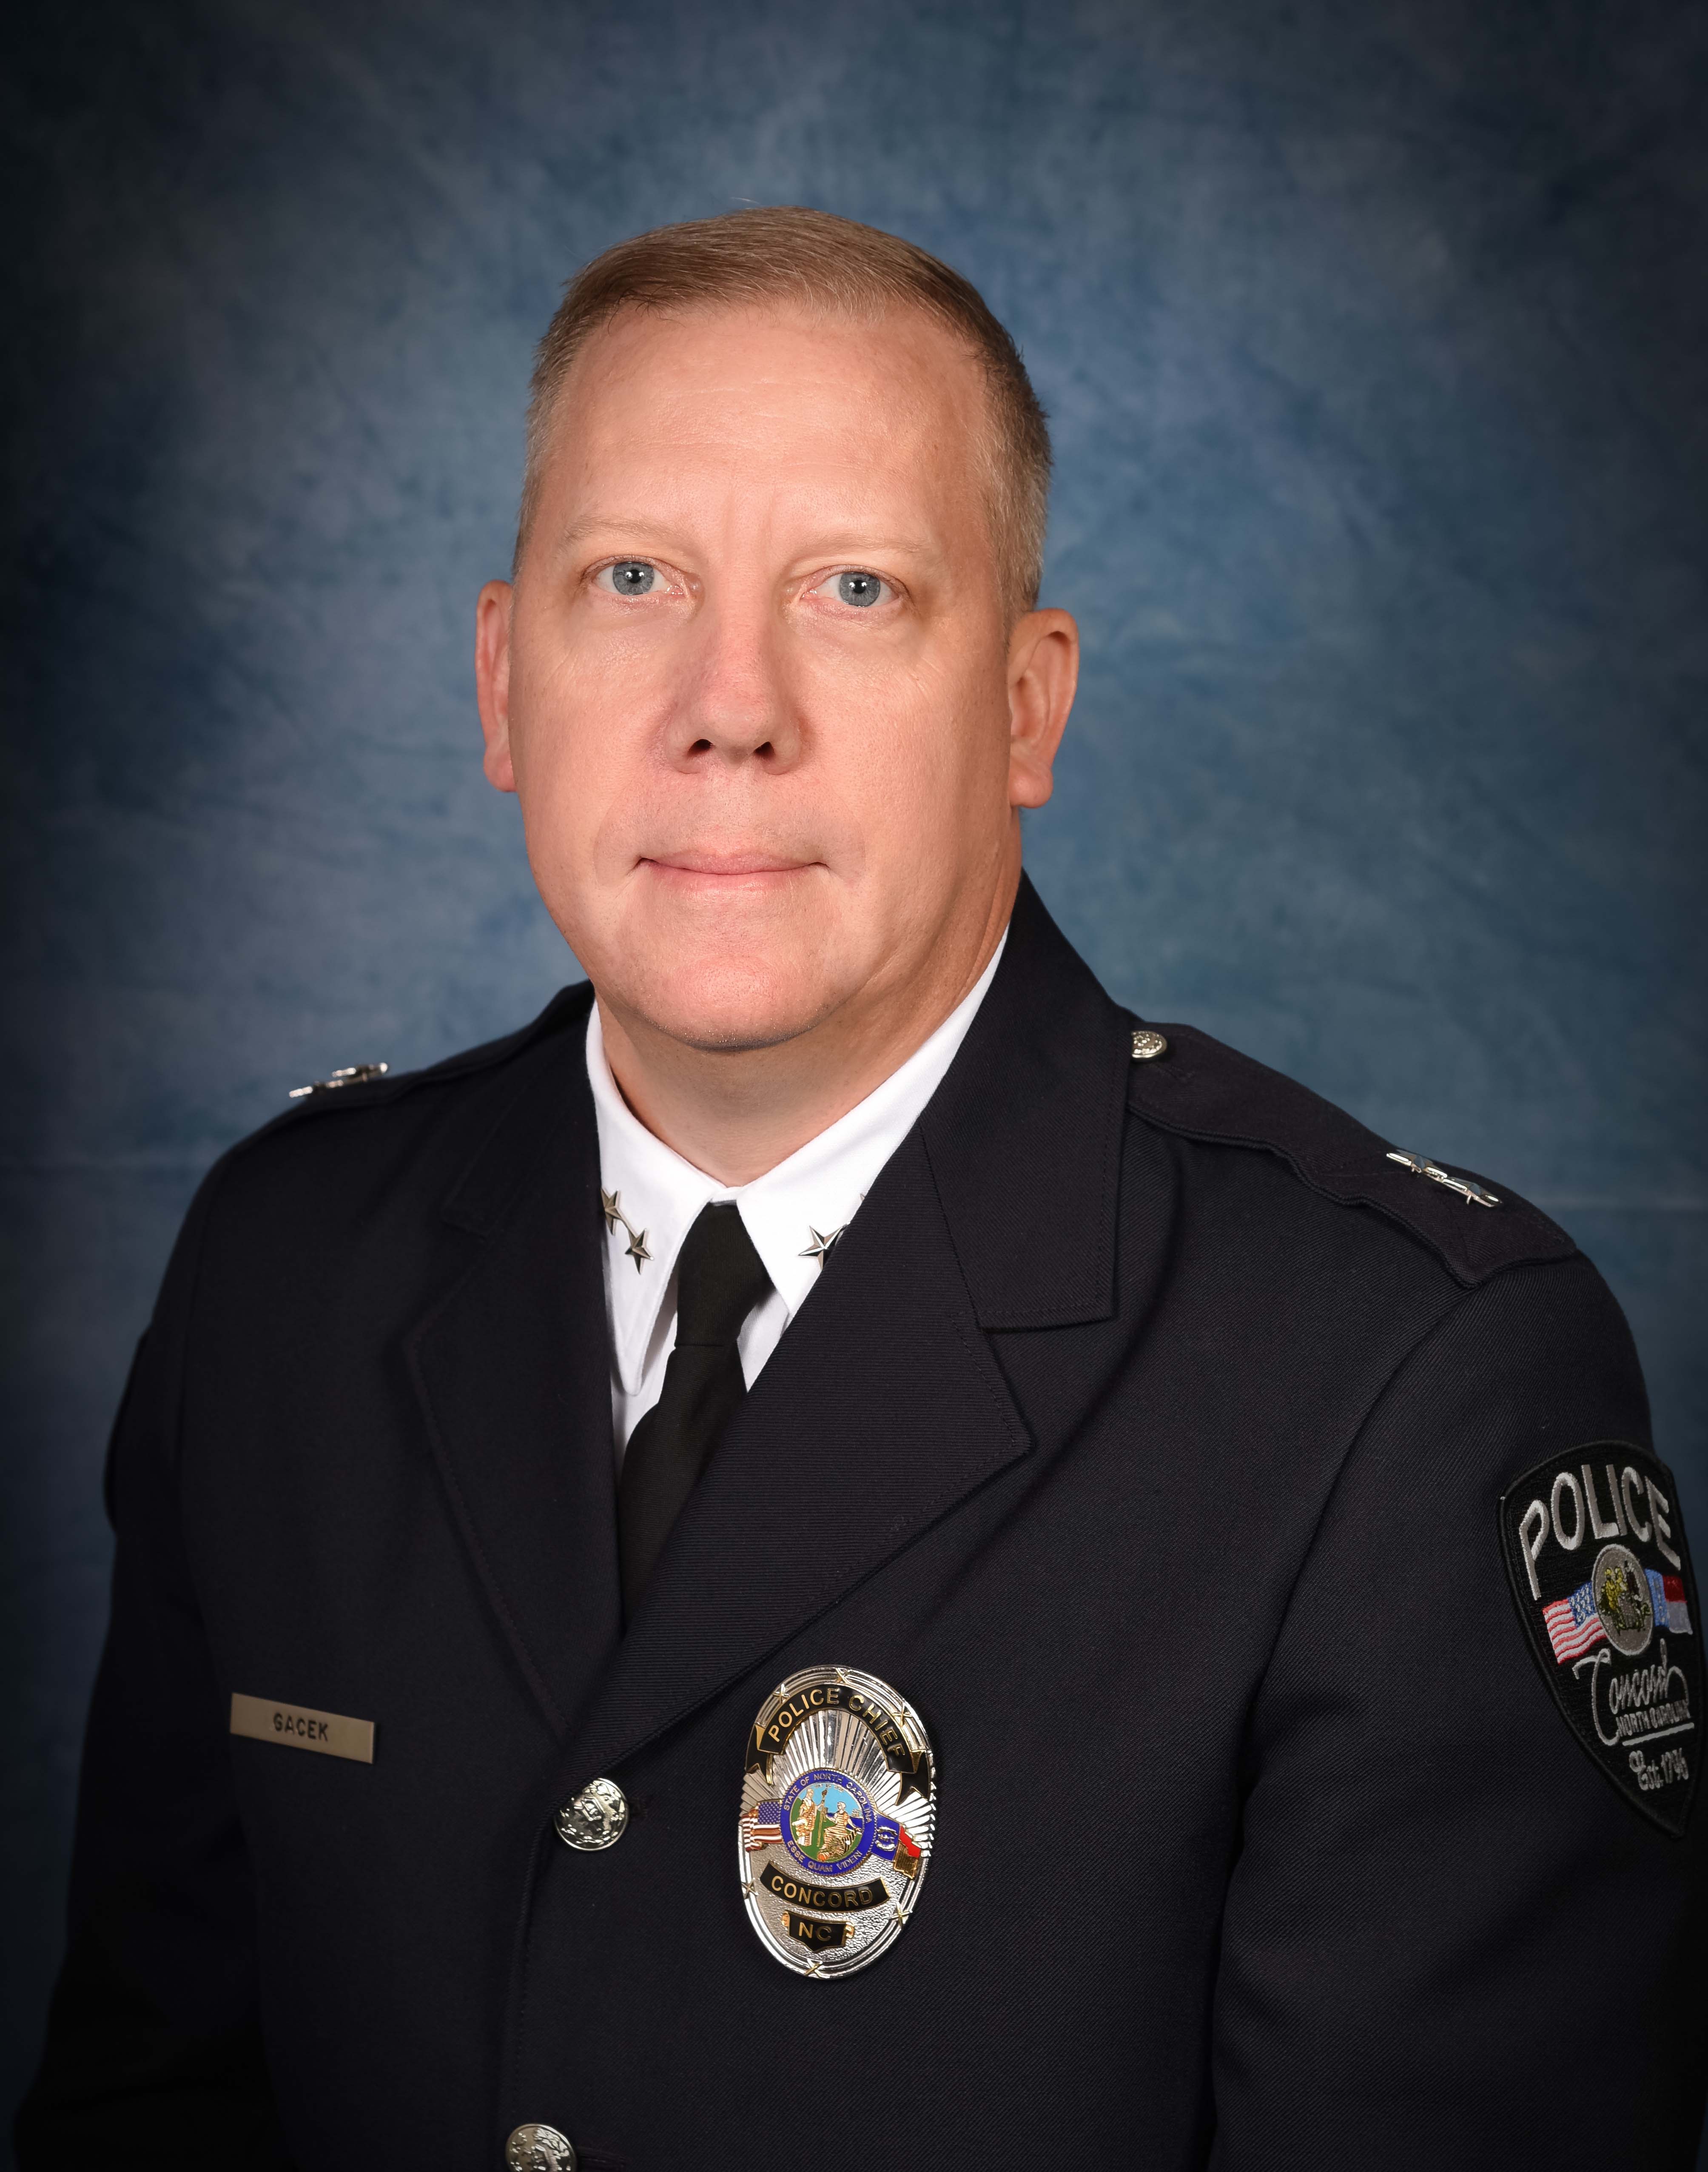 Police Chief Gary Gacek